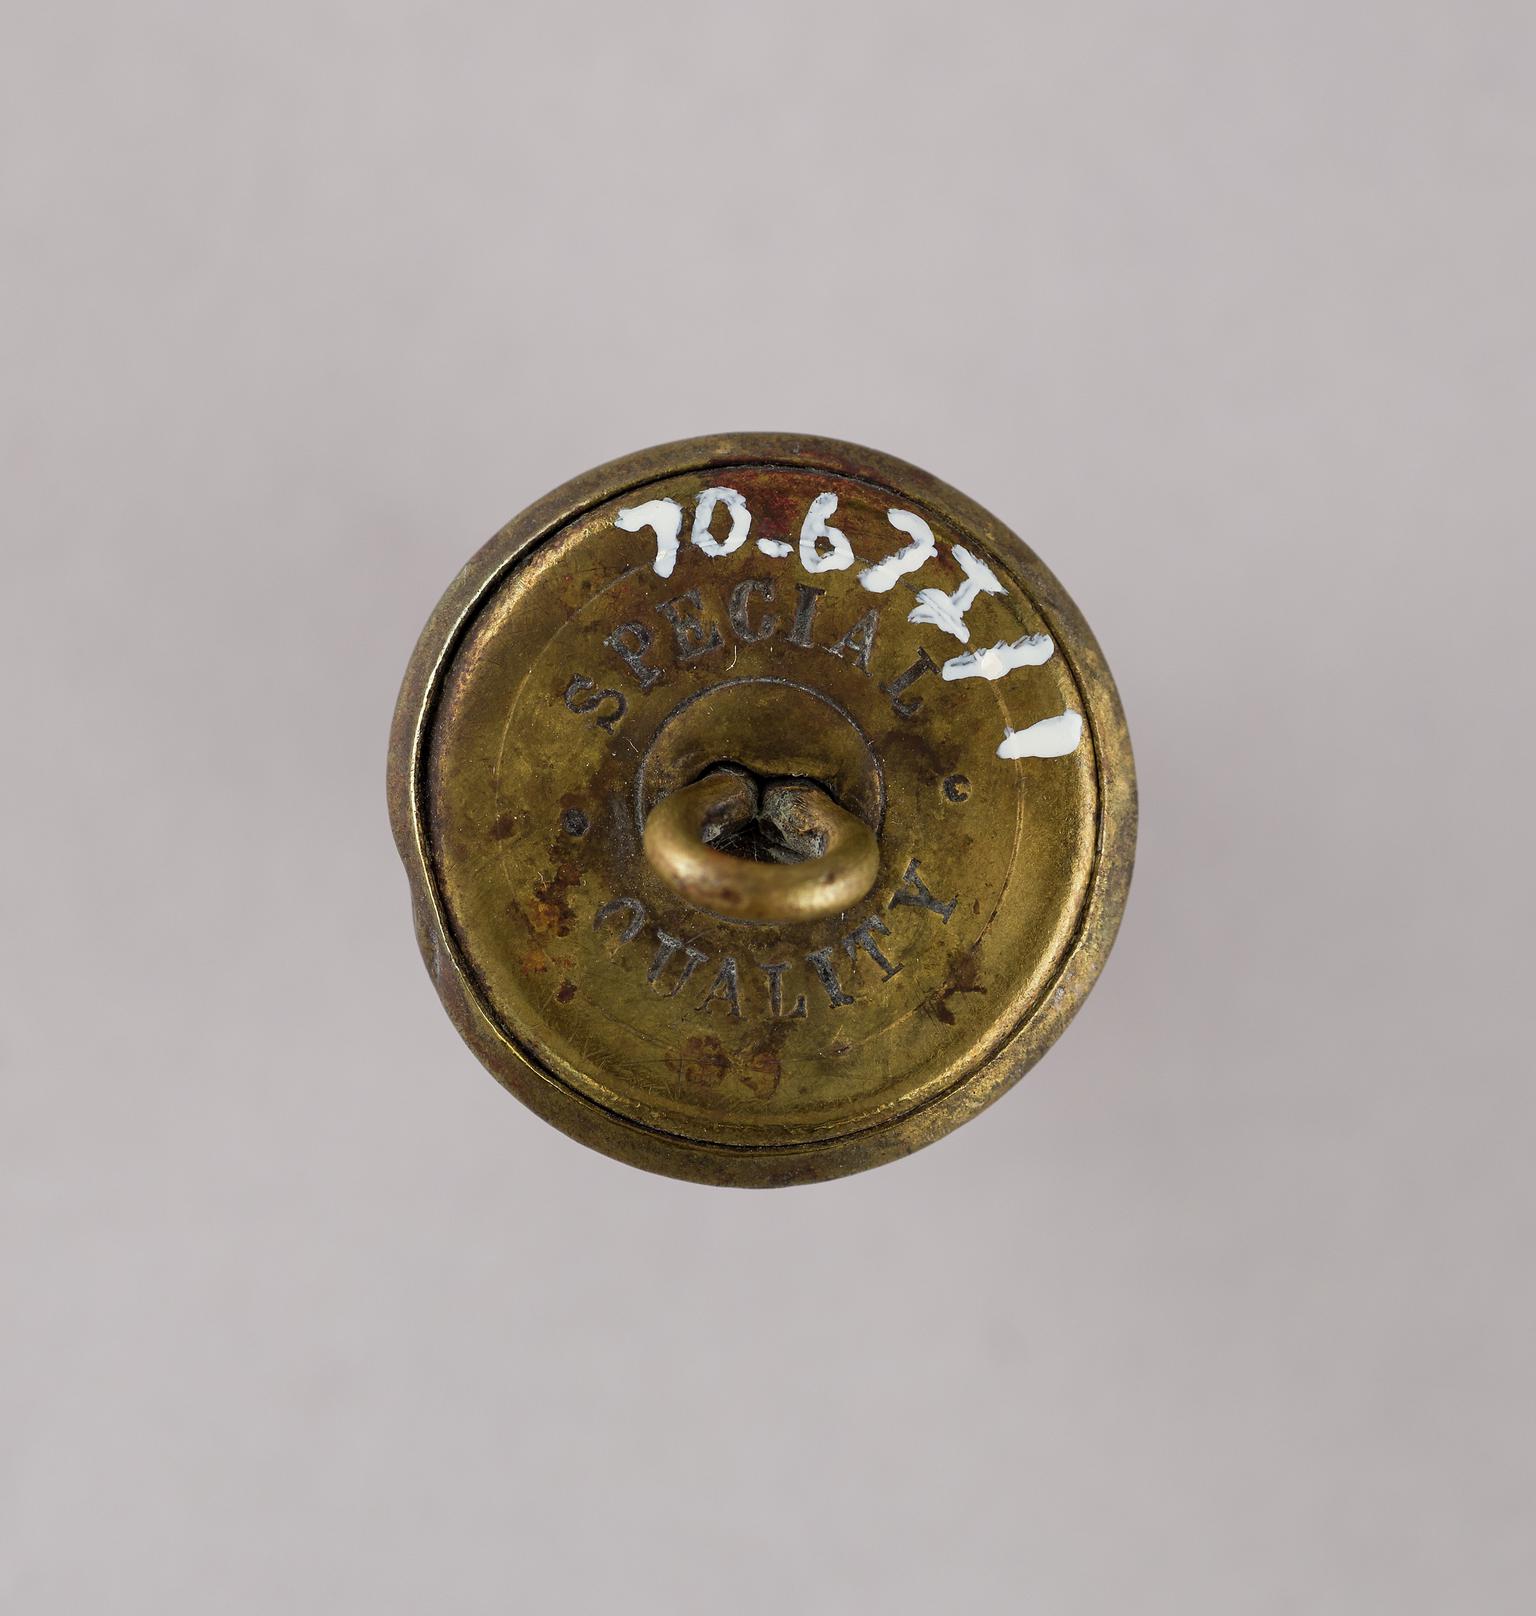 T.V.R. uniform button